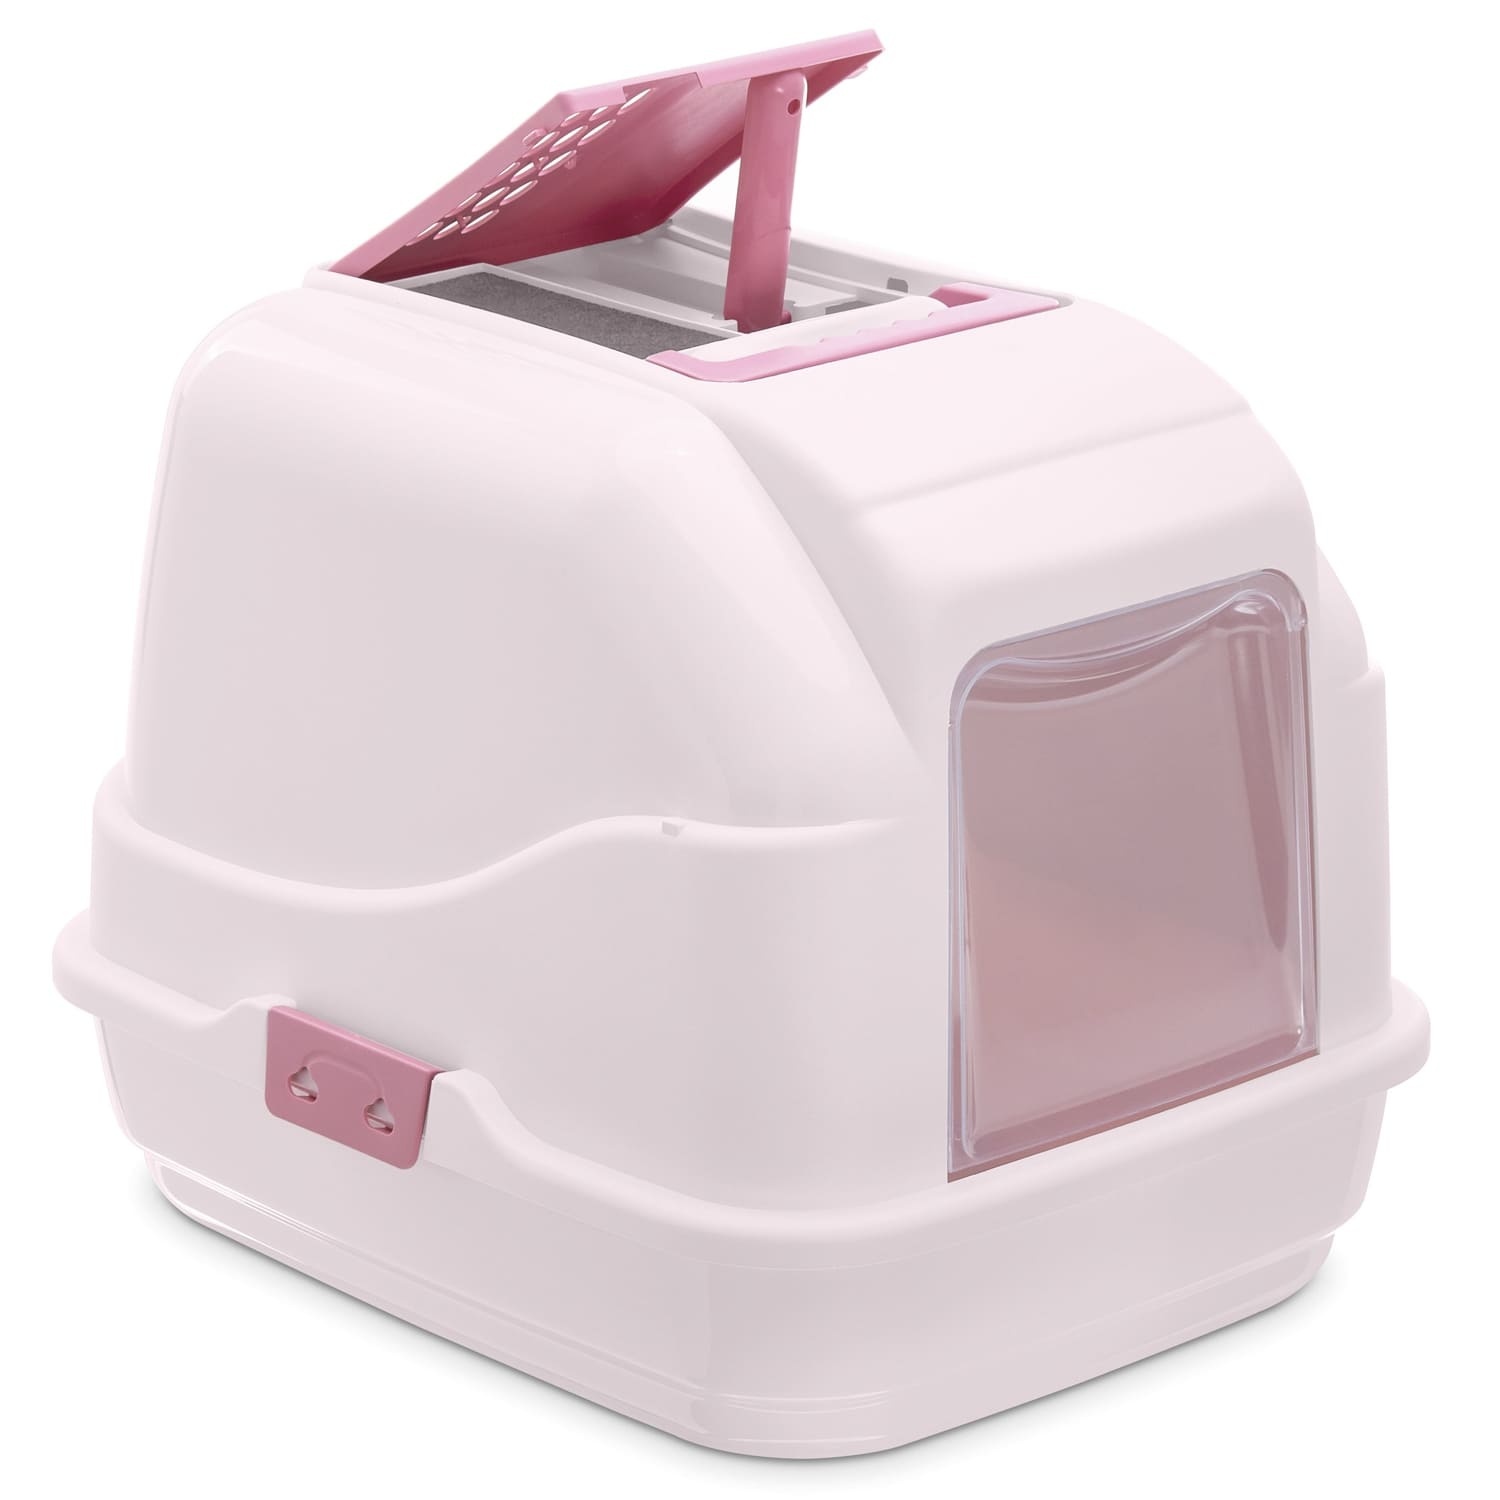 IMAC IMAC био-туалет для кошек, нежно-розовый (1,7 кг) imac imac био туалет для кошек белый бежевый 2 85 кг